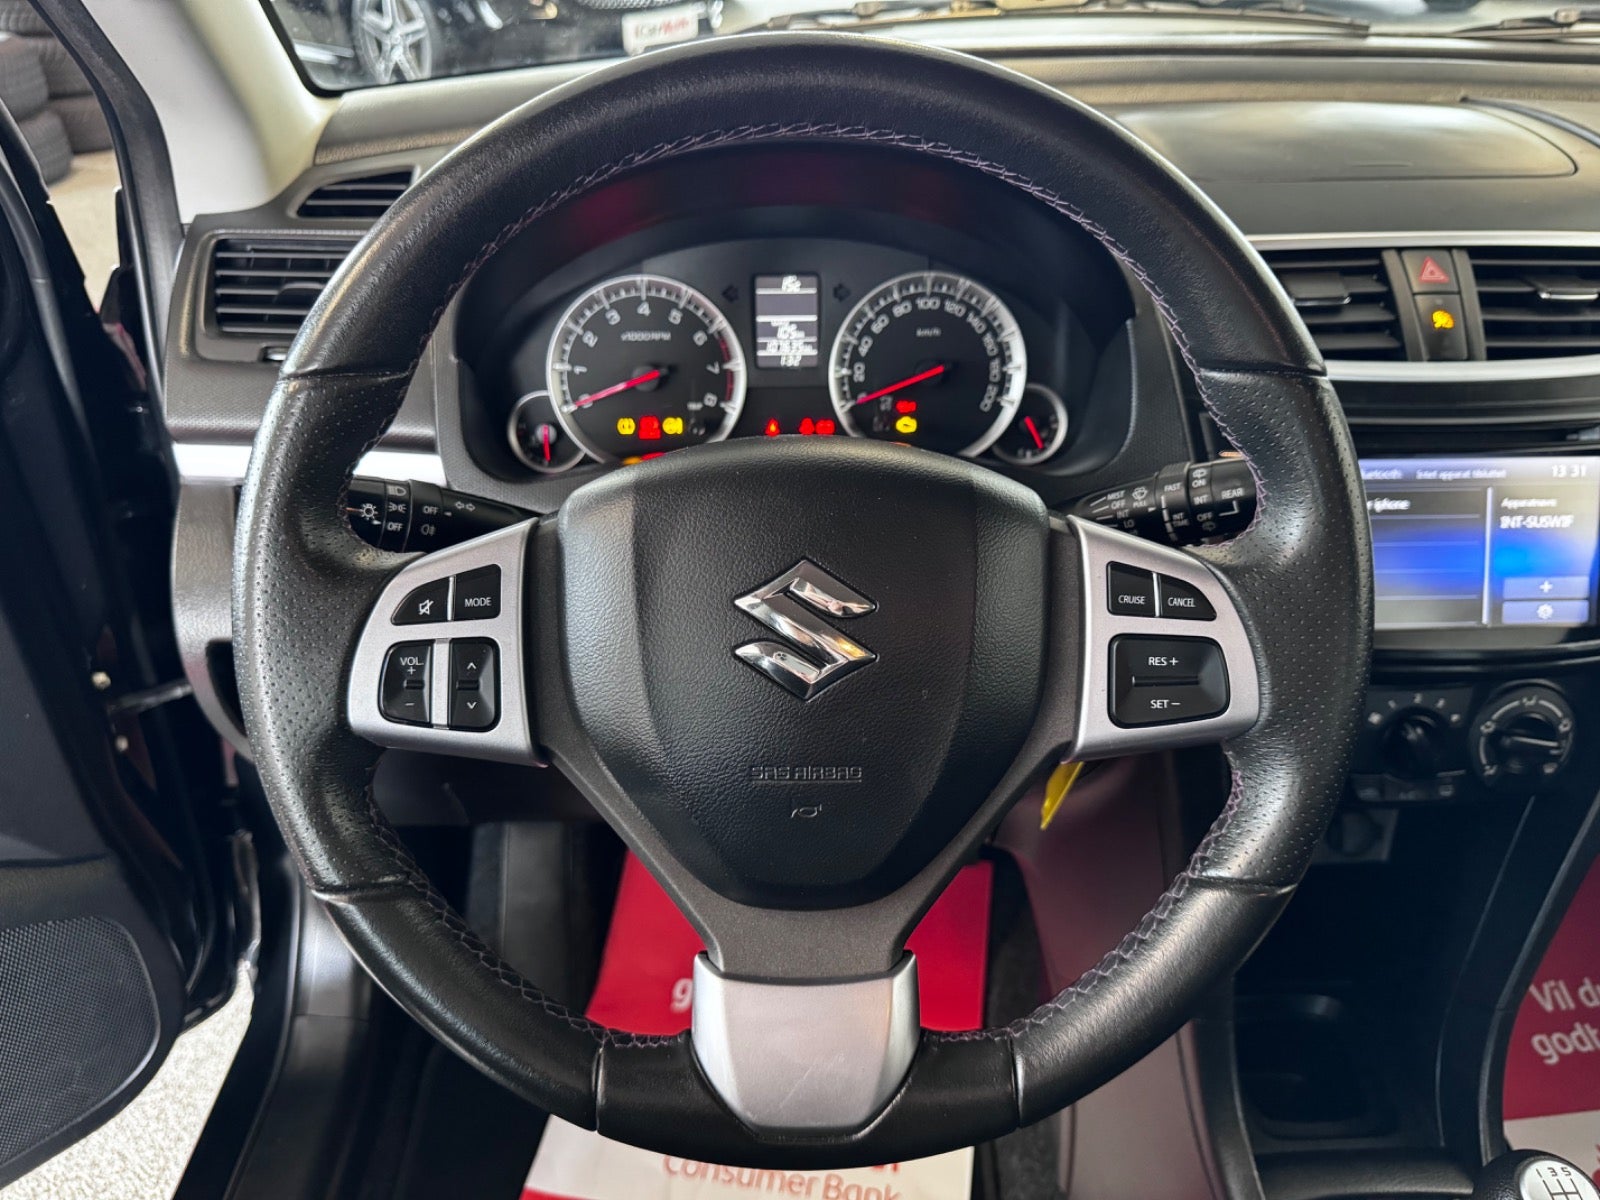 Suzuki Swift 2015